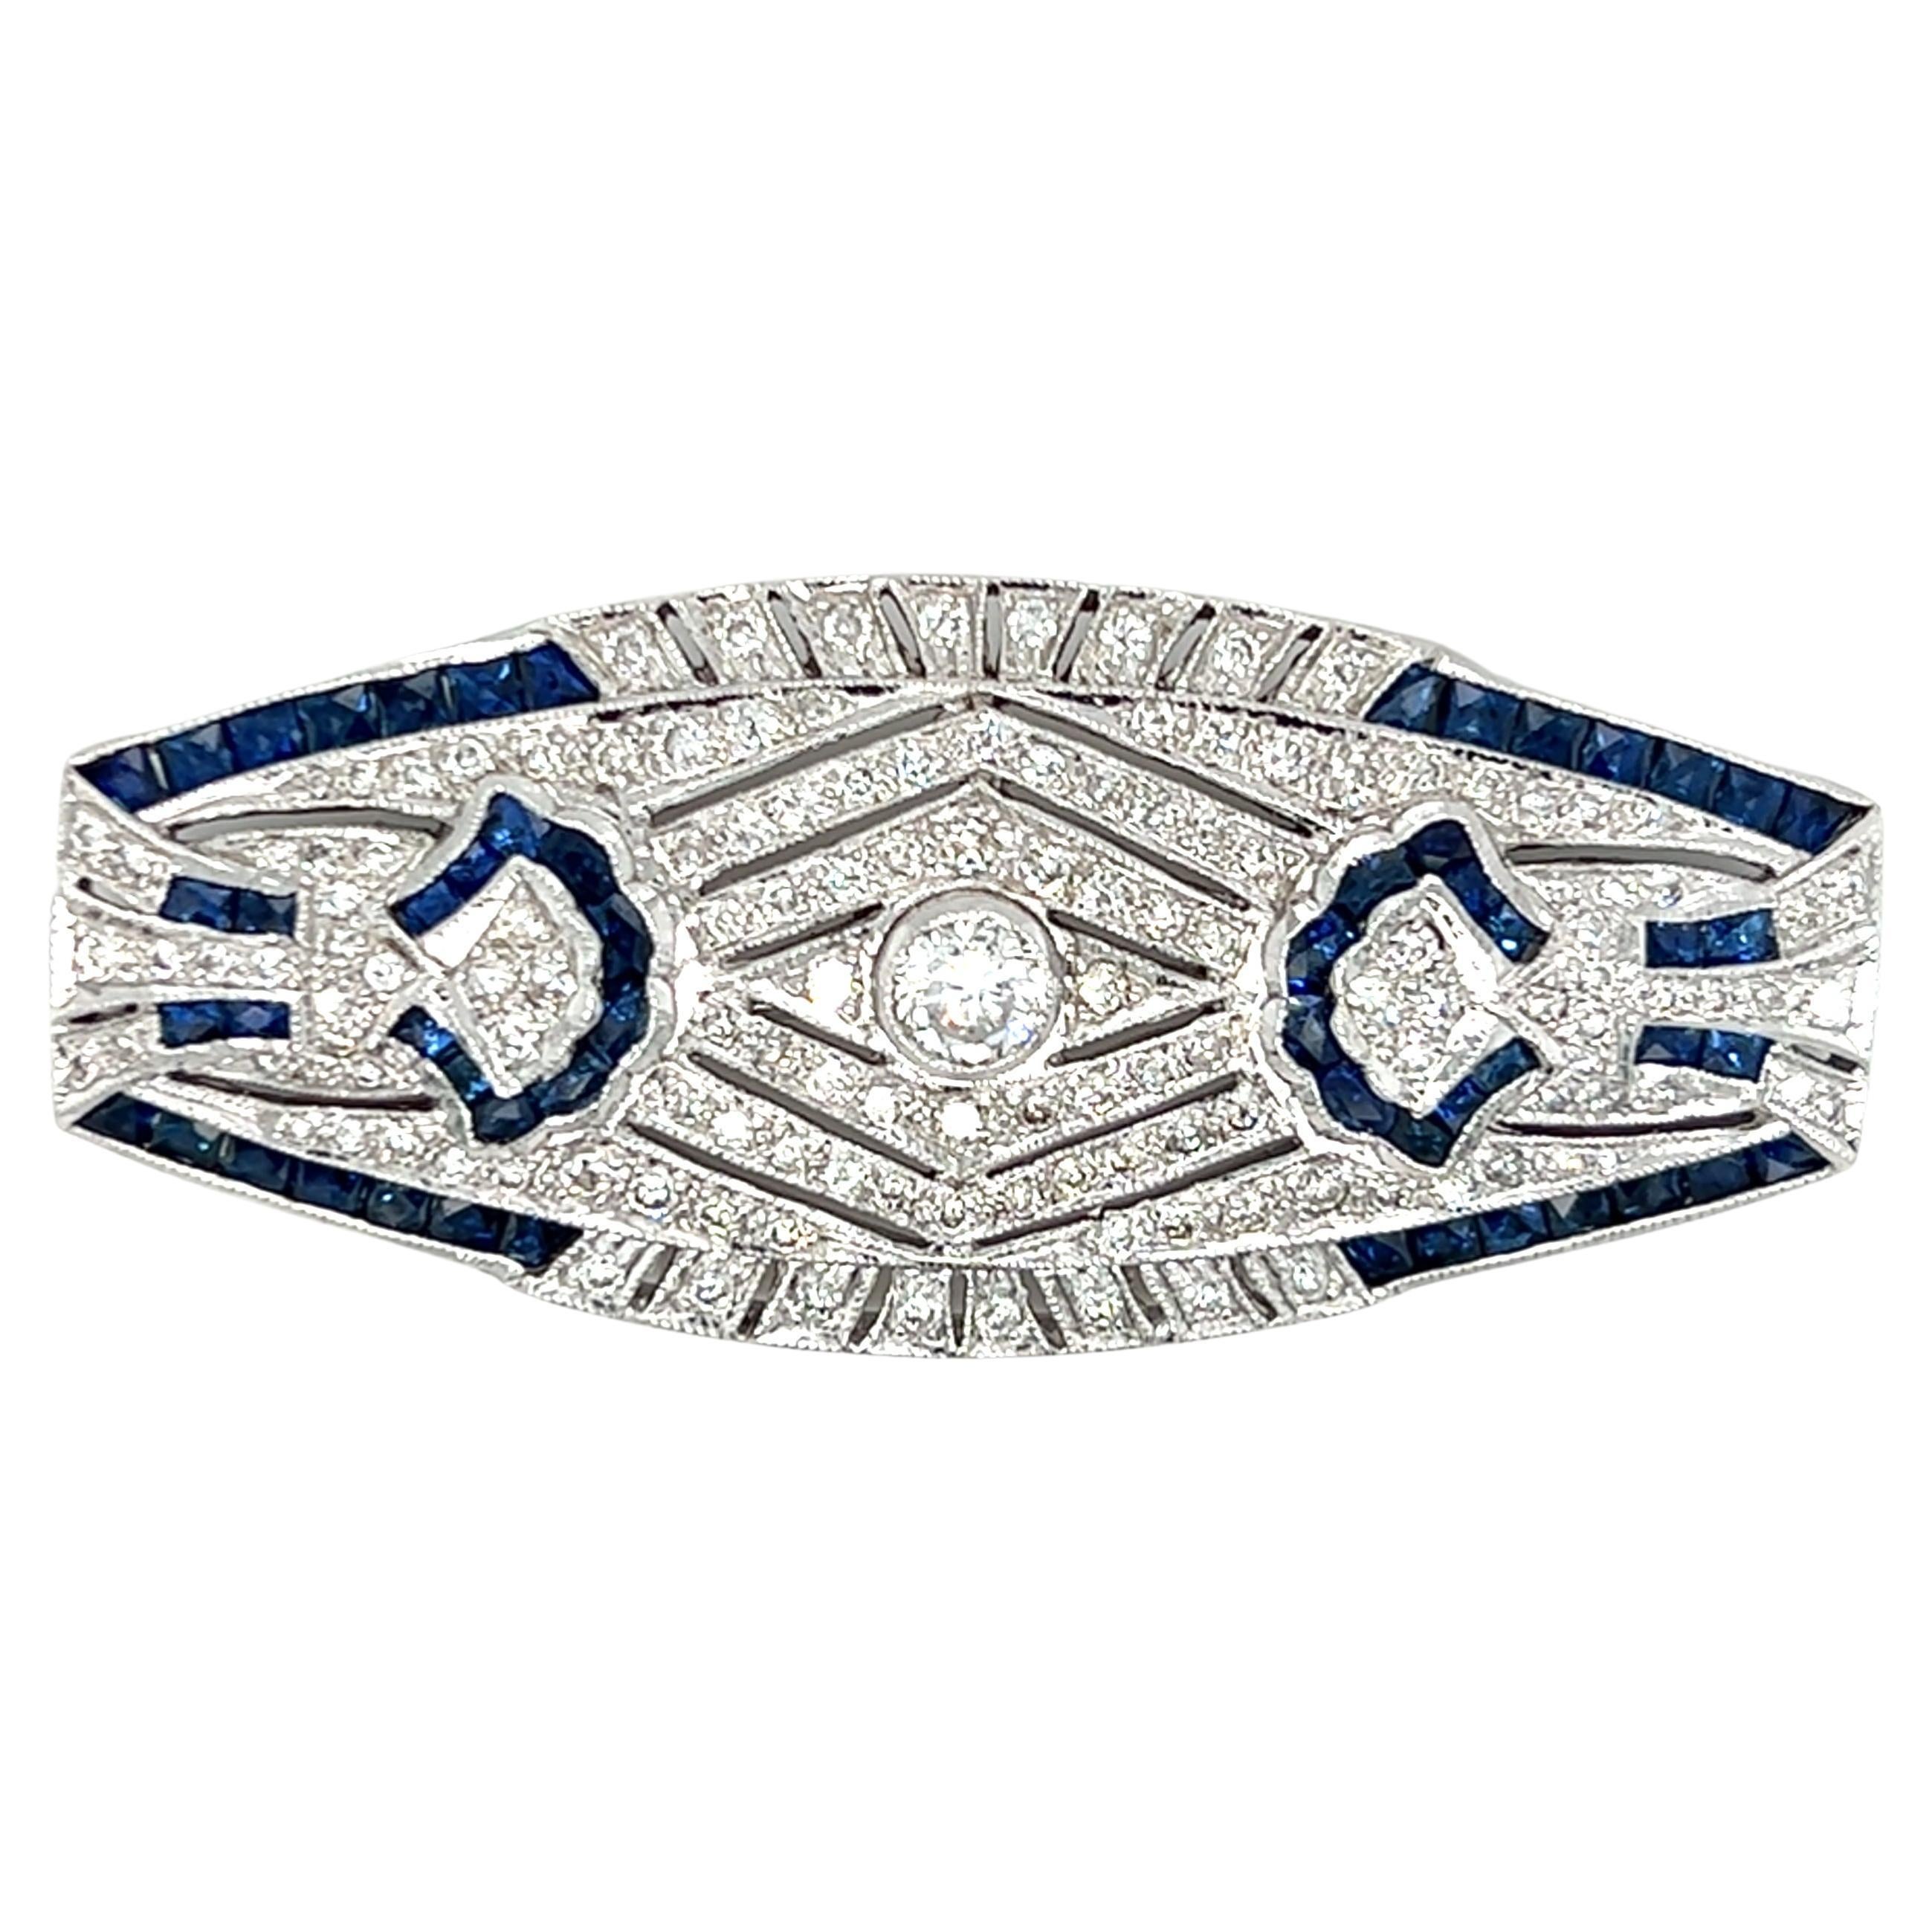 Art Deco Design Diamond and Sapphire Pendant/Brooch in 18K White Gold 